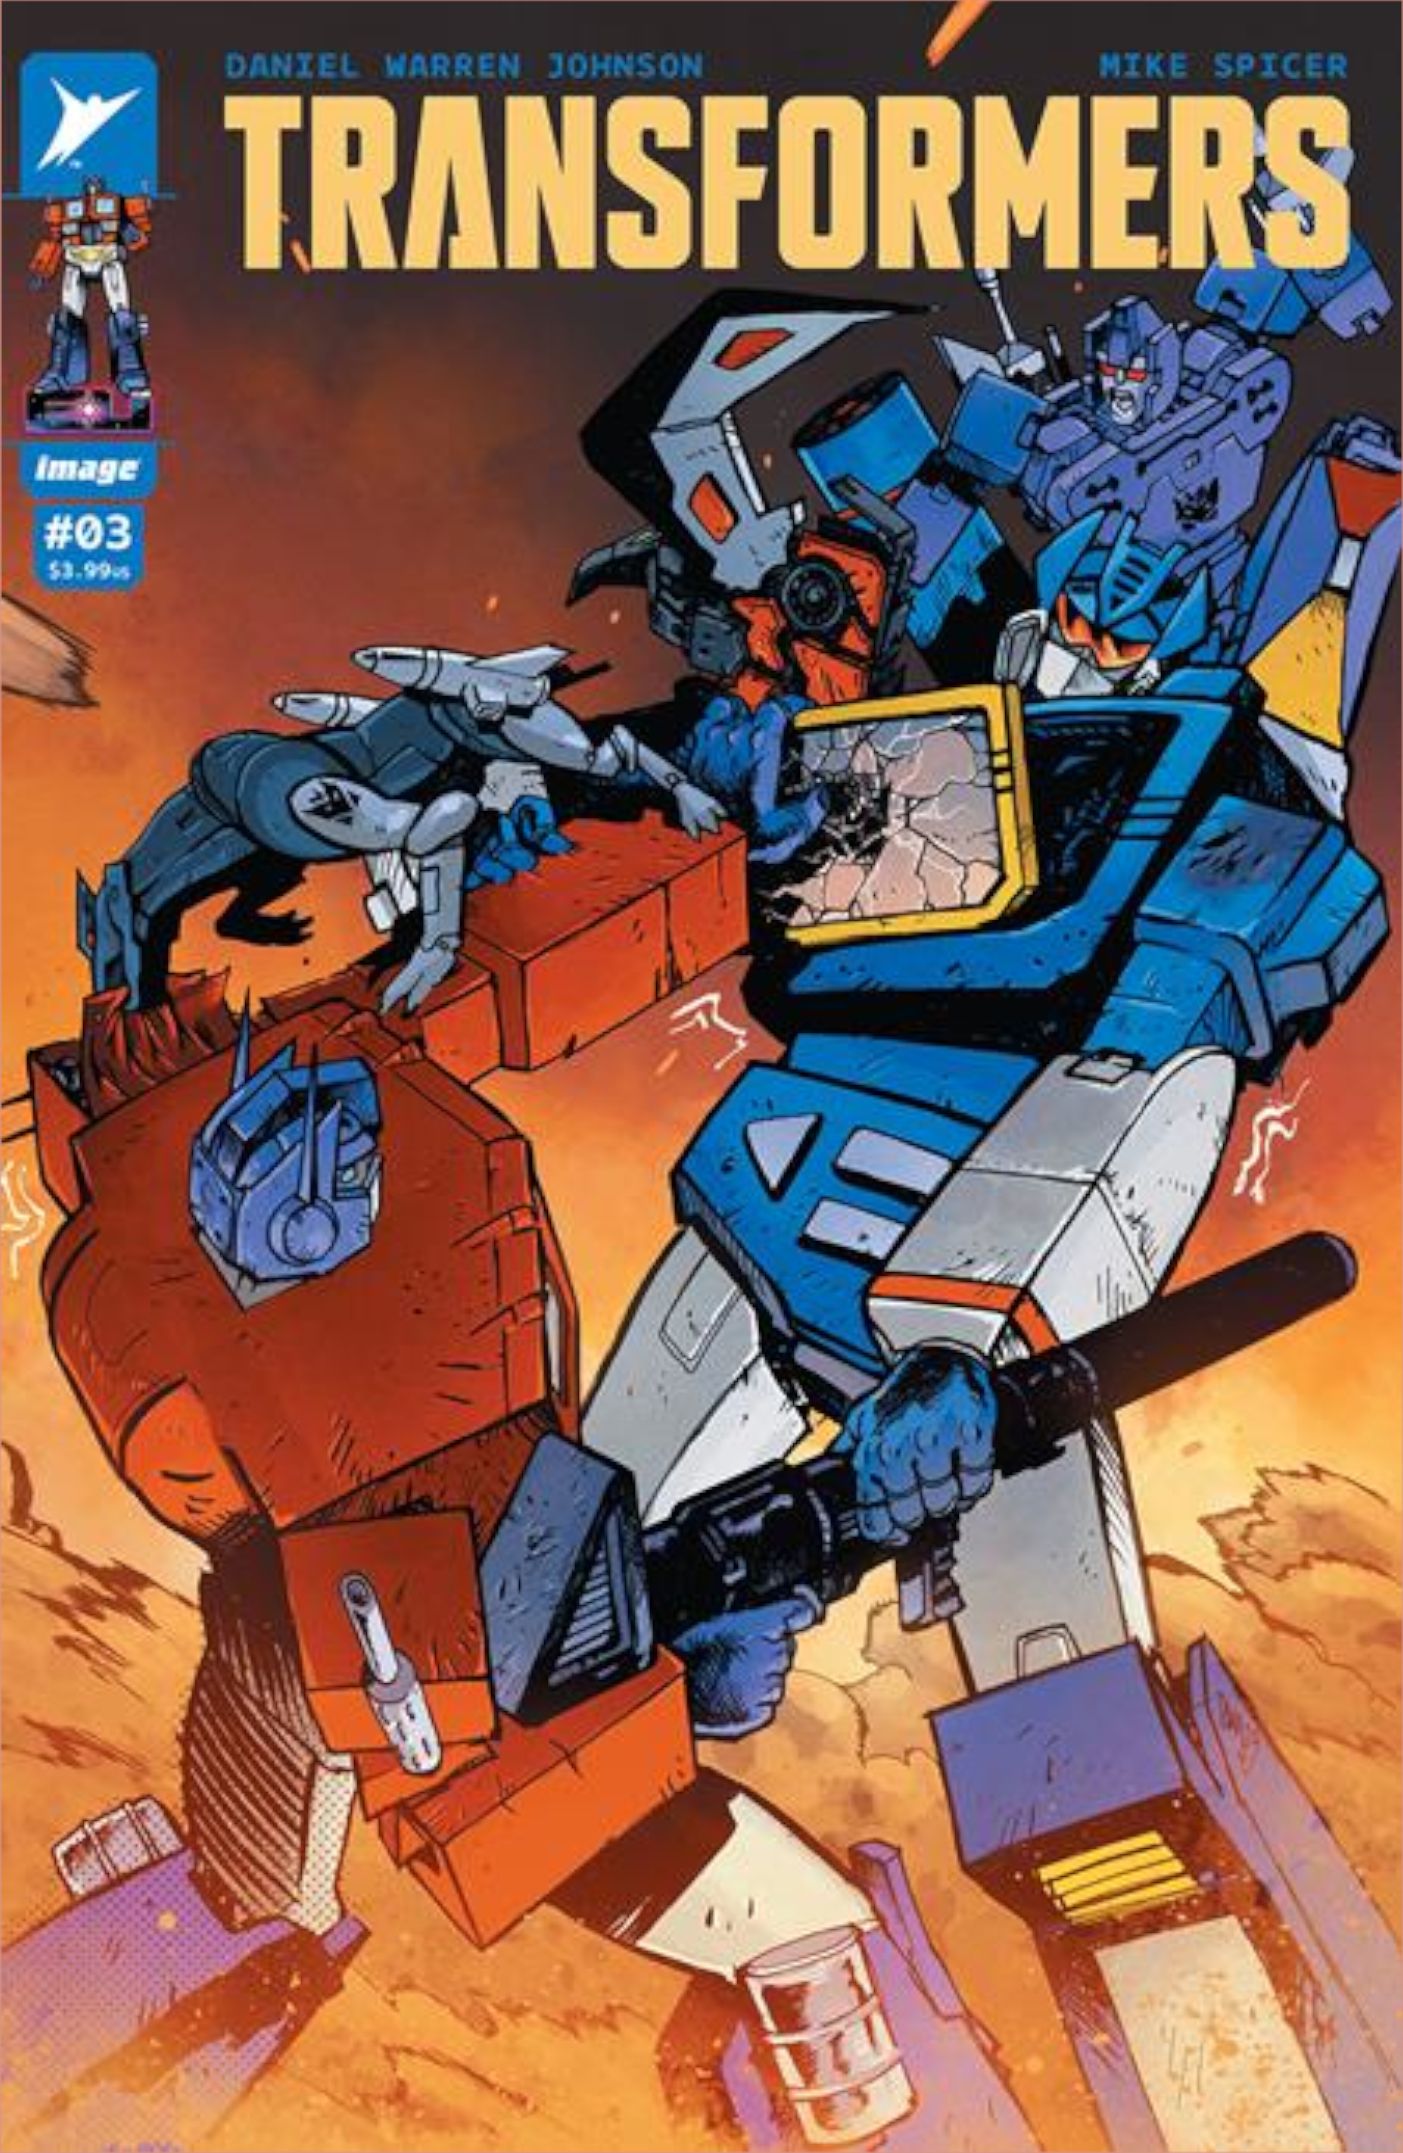 Transformers #3 cover by Daniel Warren Johnson